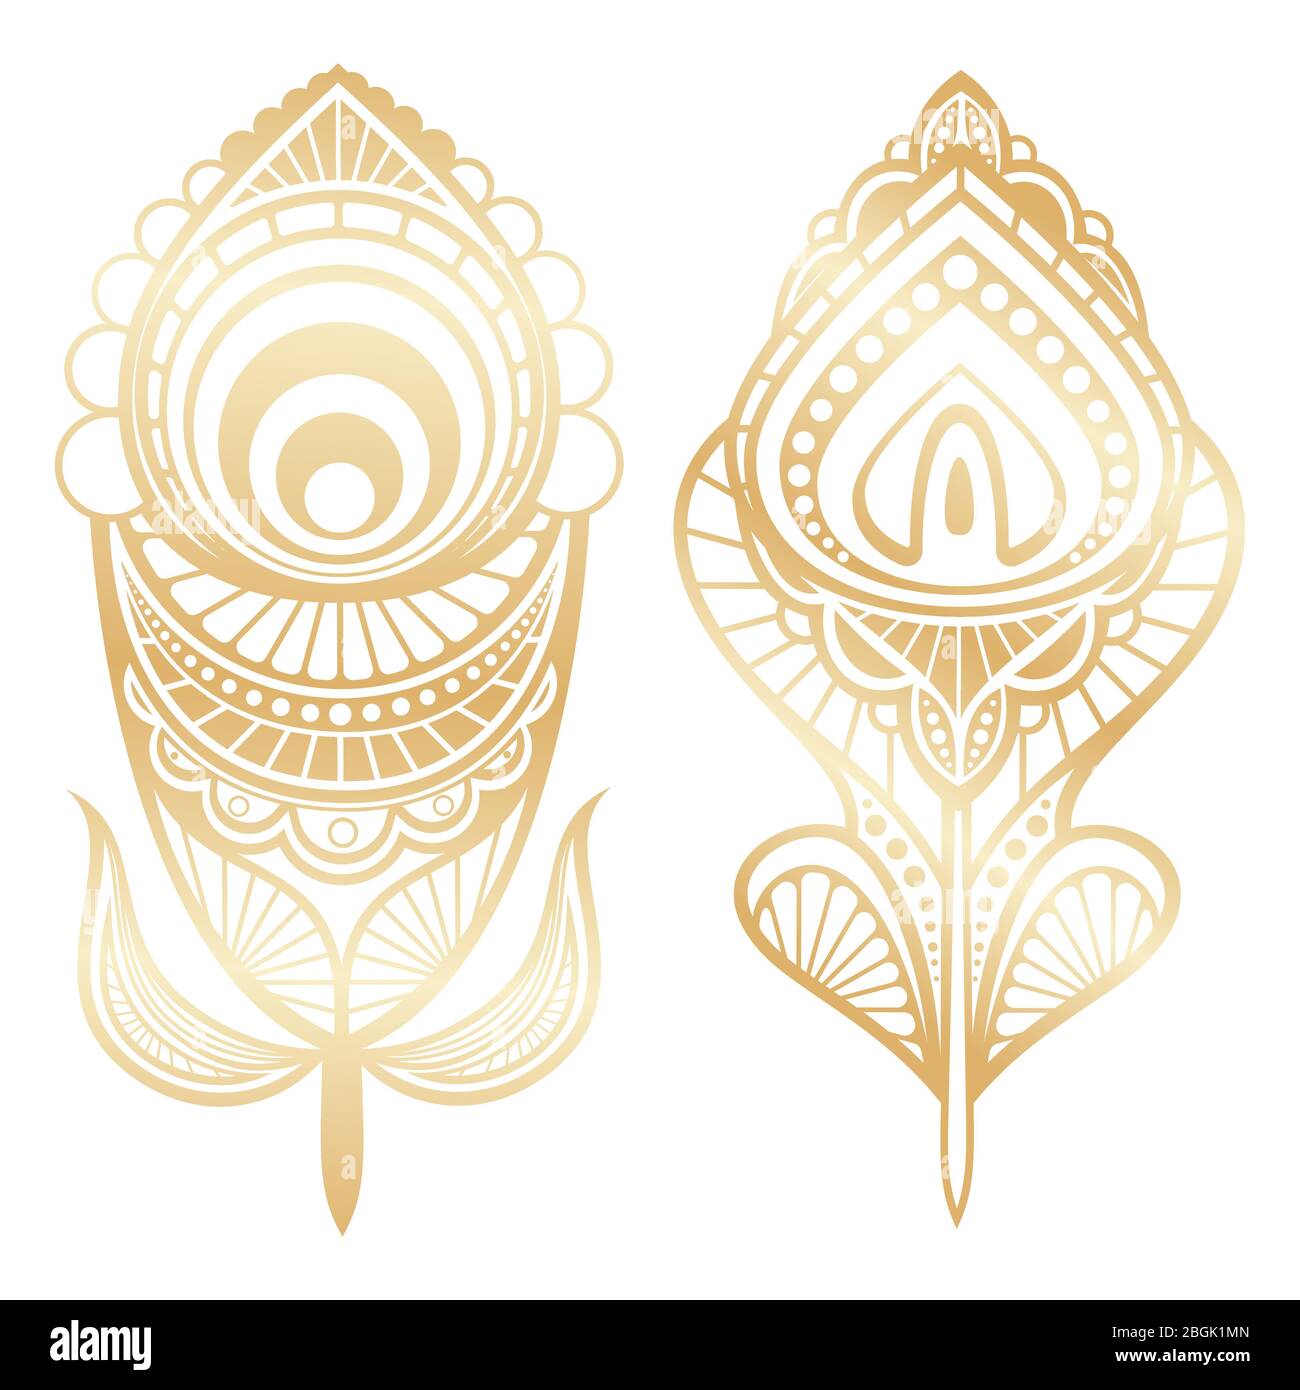 Goldene Federn indianischer Stil isoliert auf weißem Hintergrund. Vektorgrafik Stock Vektor